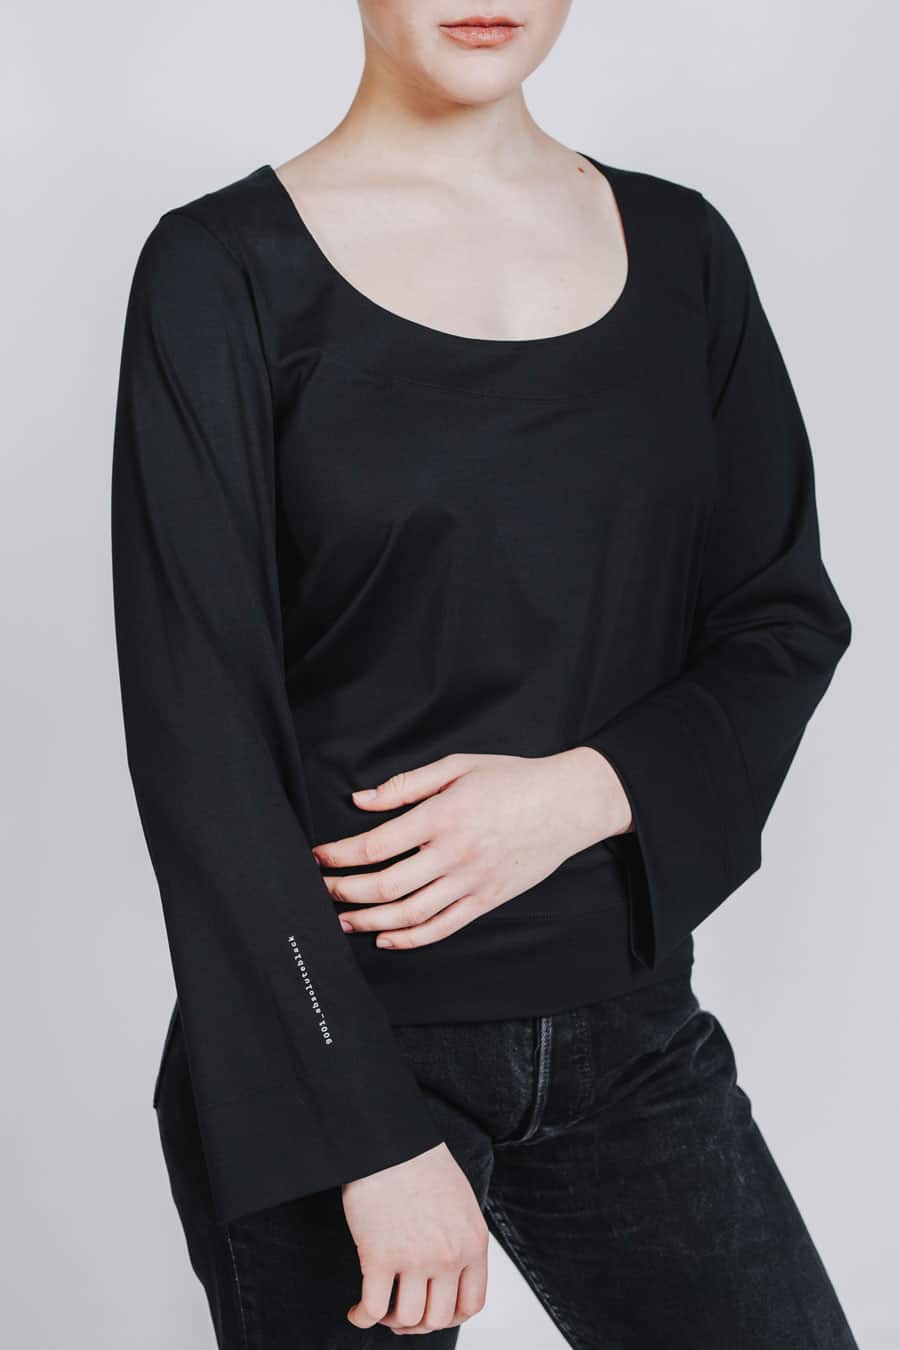 Deep White Black Modell KAYA basic Langarmshirt Damen schwarz mit Jeans schwarz, Rundhalsausschnitt und weite Ärmel, Schriftzug 9001 Absolute Black, Ansicht Detail Ärmel